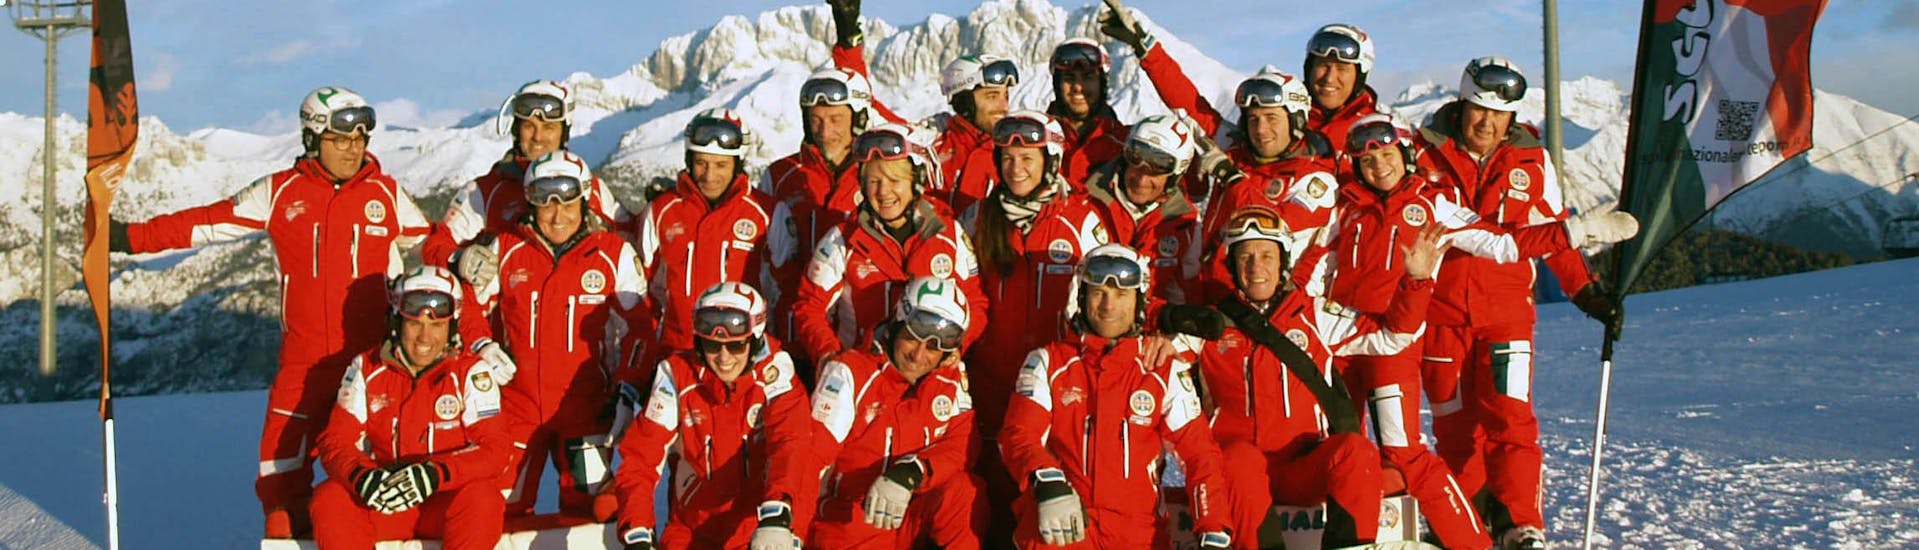 The big family of Scuola sci nazionale Monte Pora.